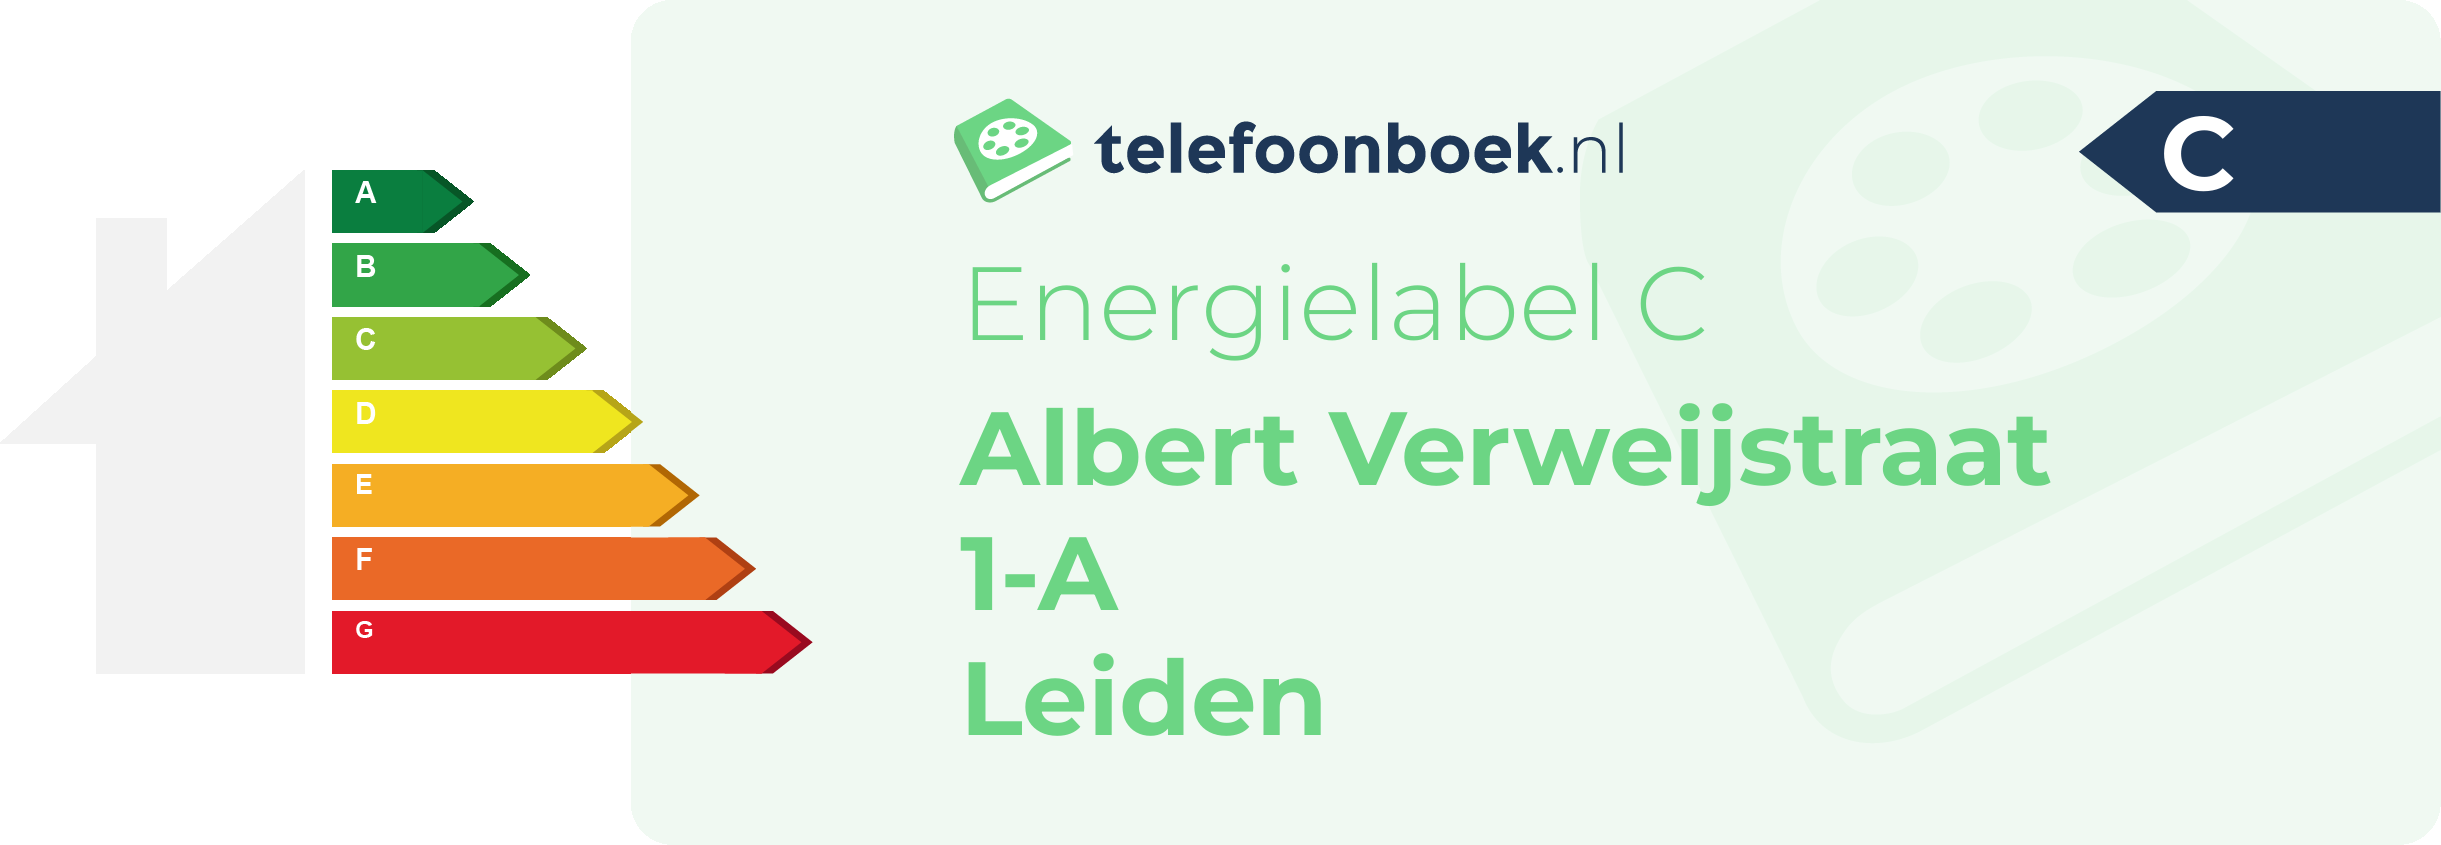 Energielabel Albert Verweijstraat 1-A Leiden